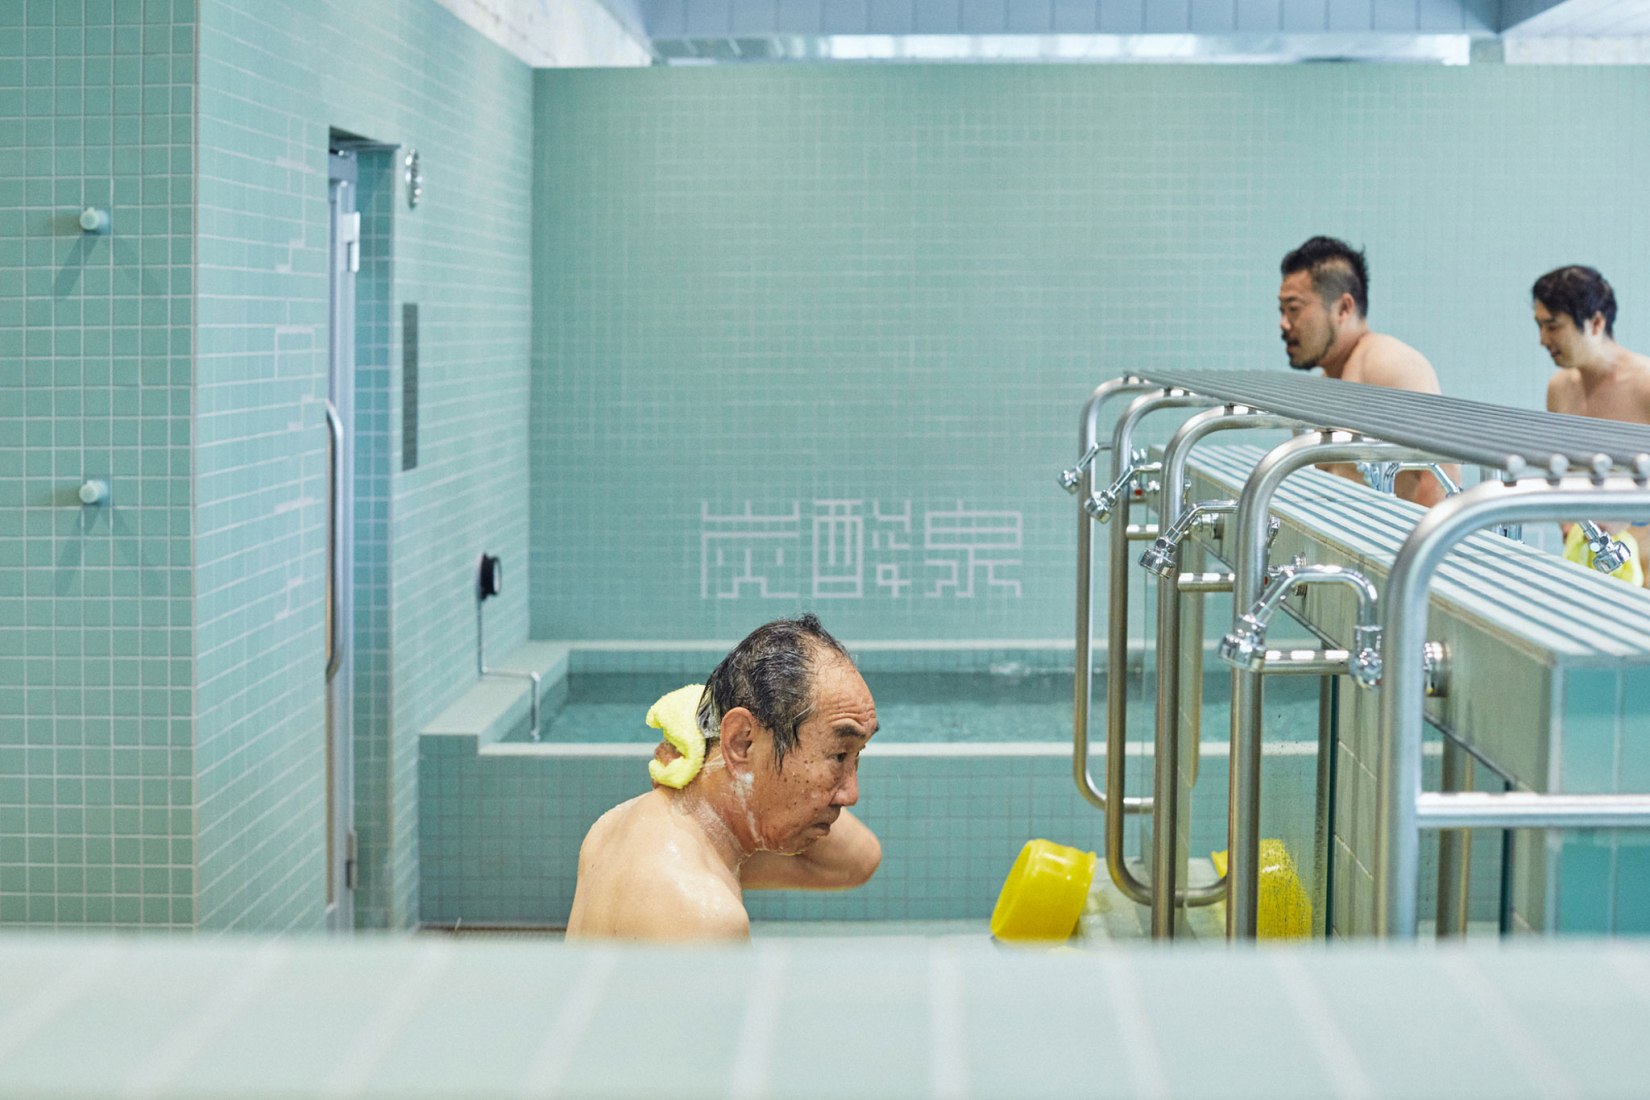 Casa de baños pública de Komaeyu por Jo Nagasaka, Schemata Architects. Fotografía por Ju Yeon Lee.